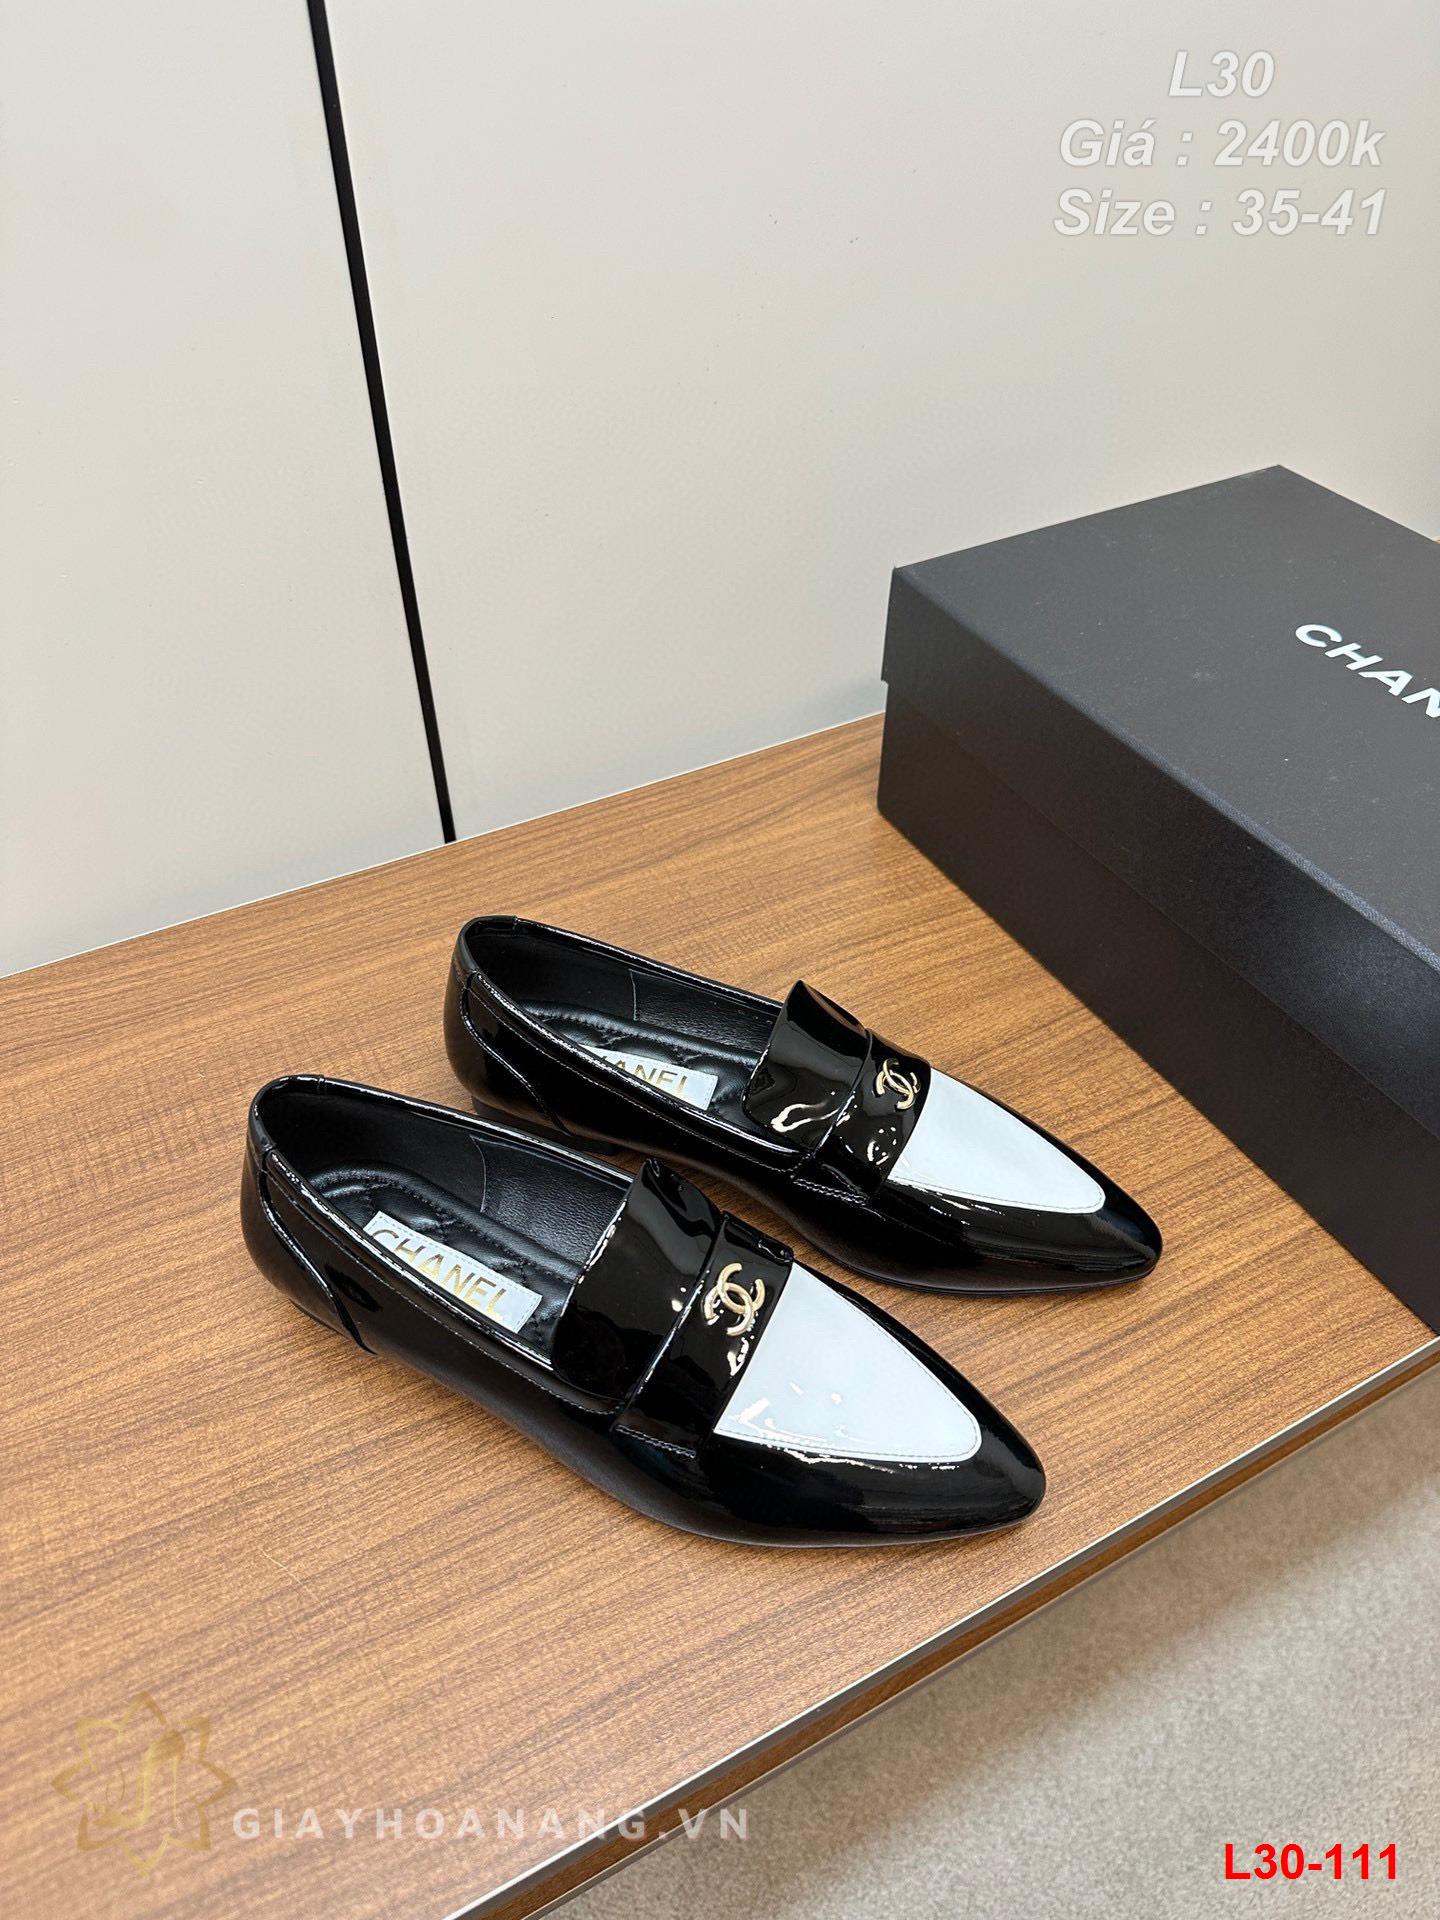 L30-111 Chanel giày lười siêu cấp